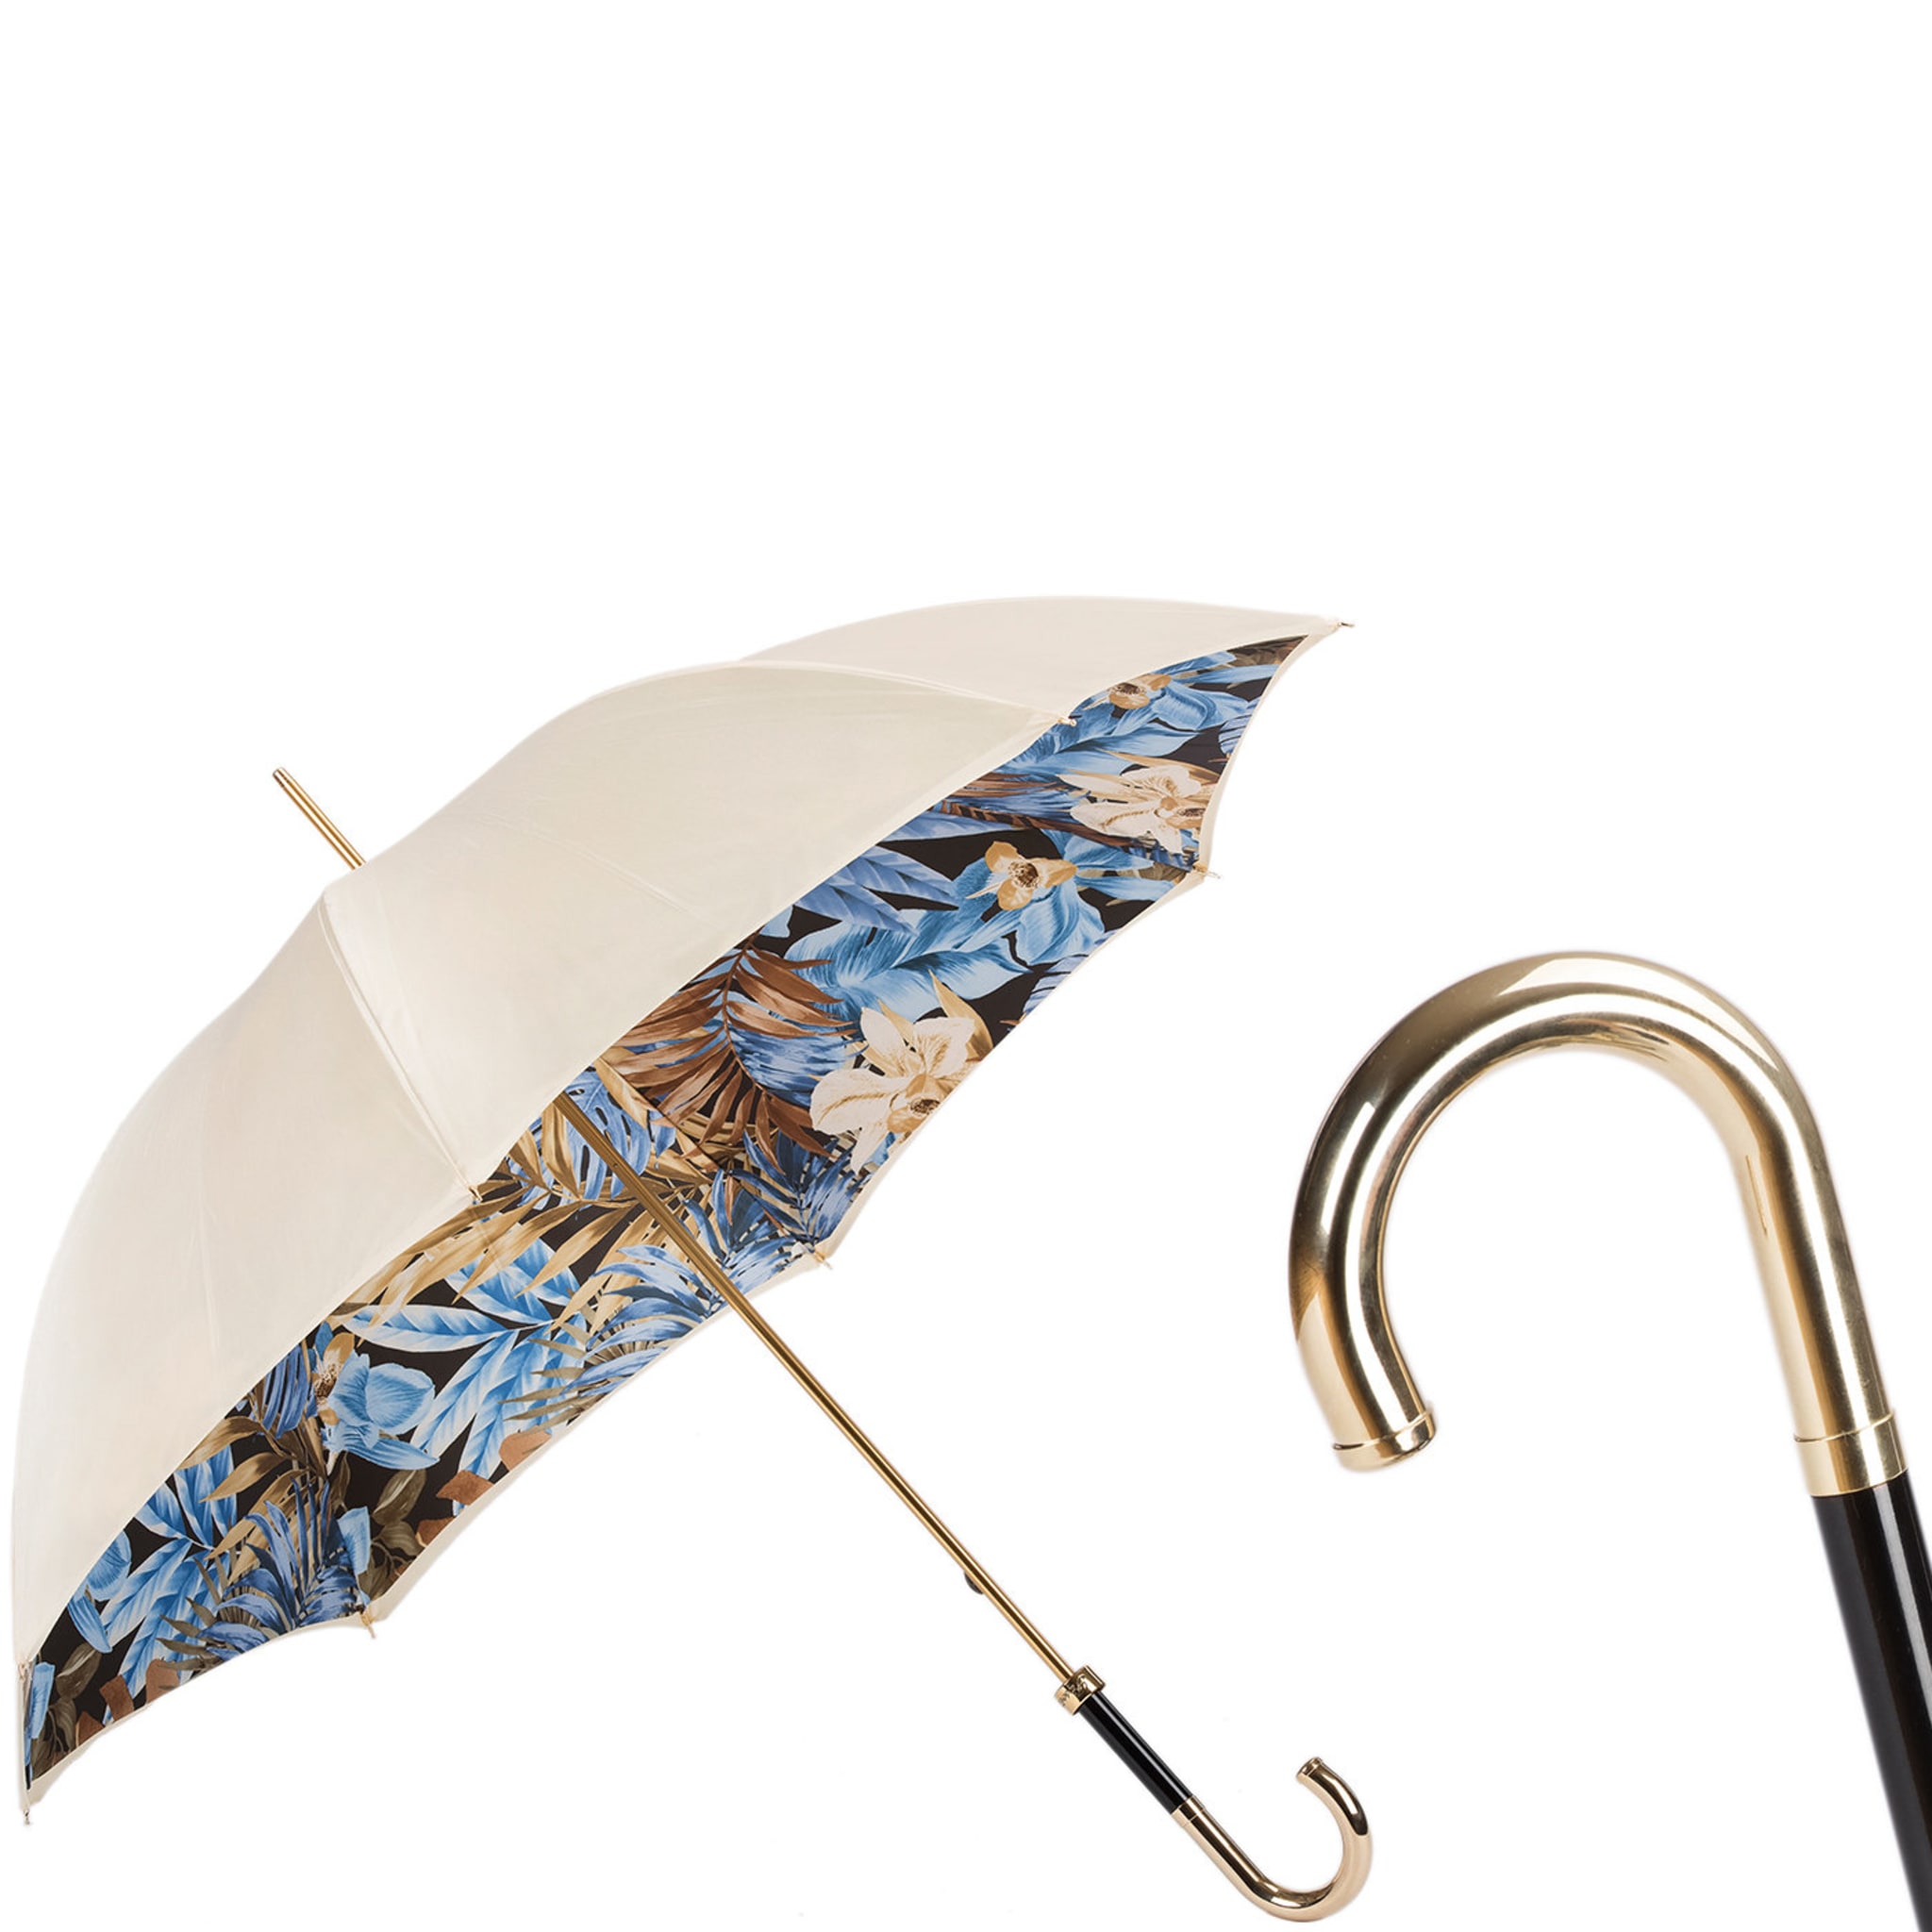 Paraguas con estampado selvático - Doble tela - Vista alternativa 1